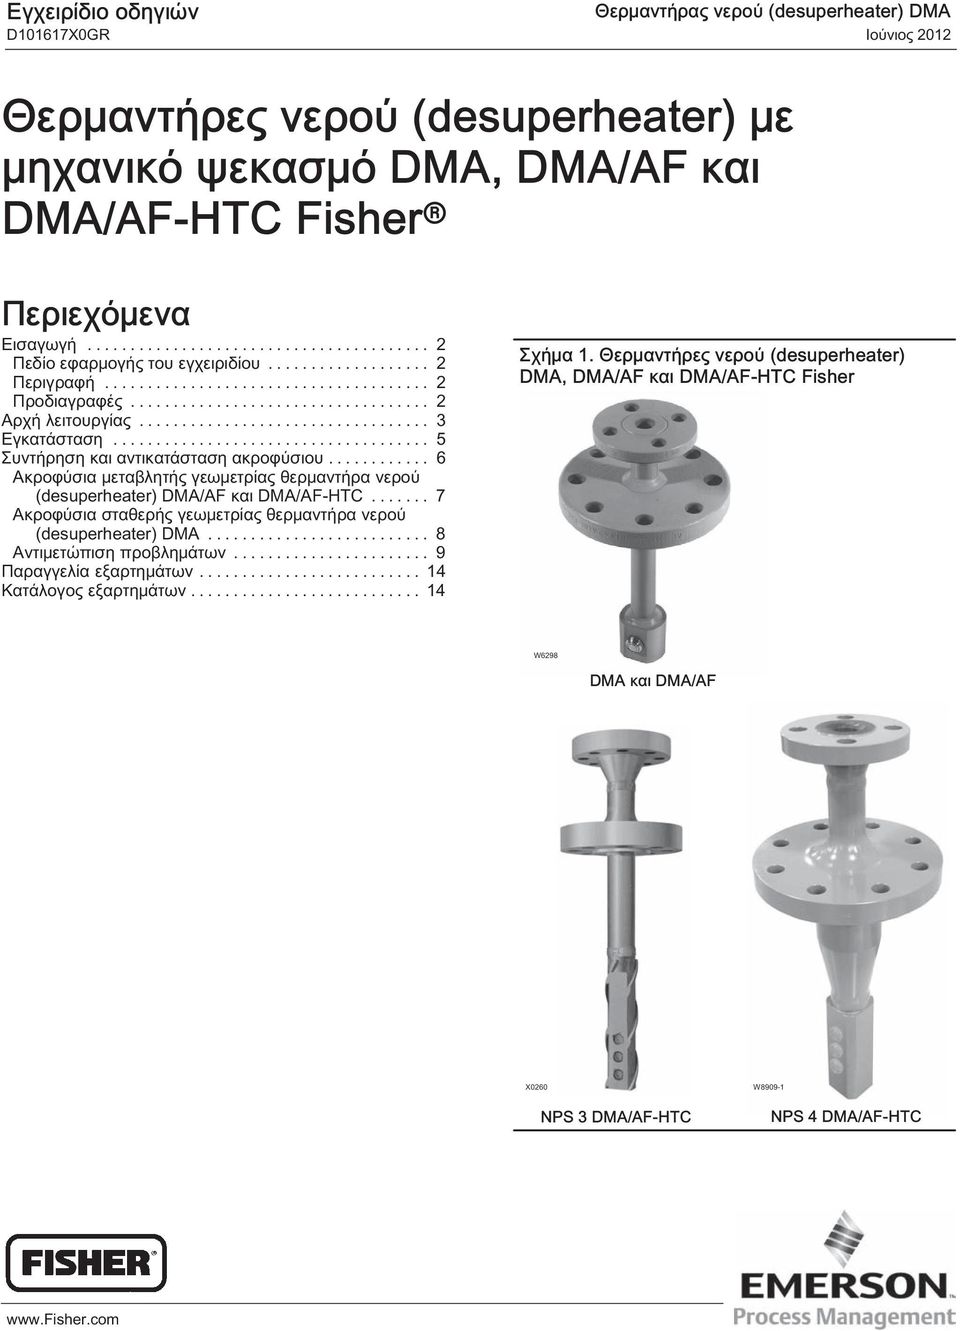 .. 6 Ακροφύσια μεταβλητής γεωμετρίας θερμαντήρα νερού (desuperheater) DMA/AF και DMA/AF-HTC... 7 Ακροφύσια σταθερής γεωμετρίας θερμαντήρα νερού (desuperheater) DMA.